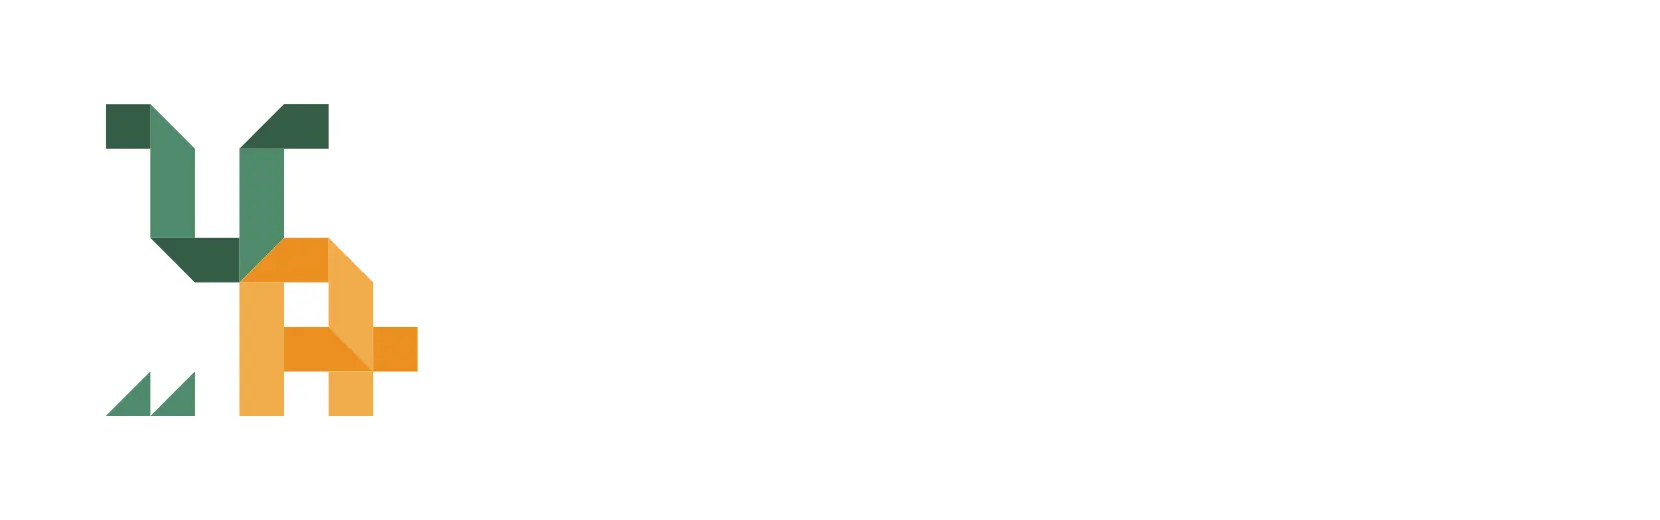 Umbria Agricoltura